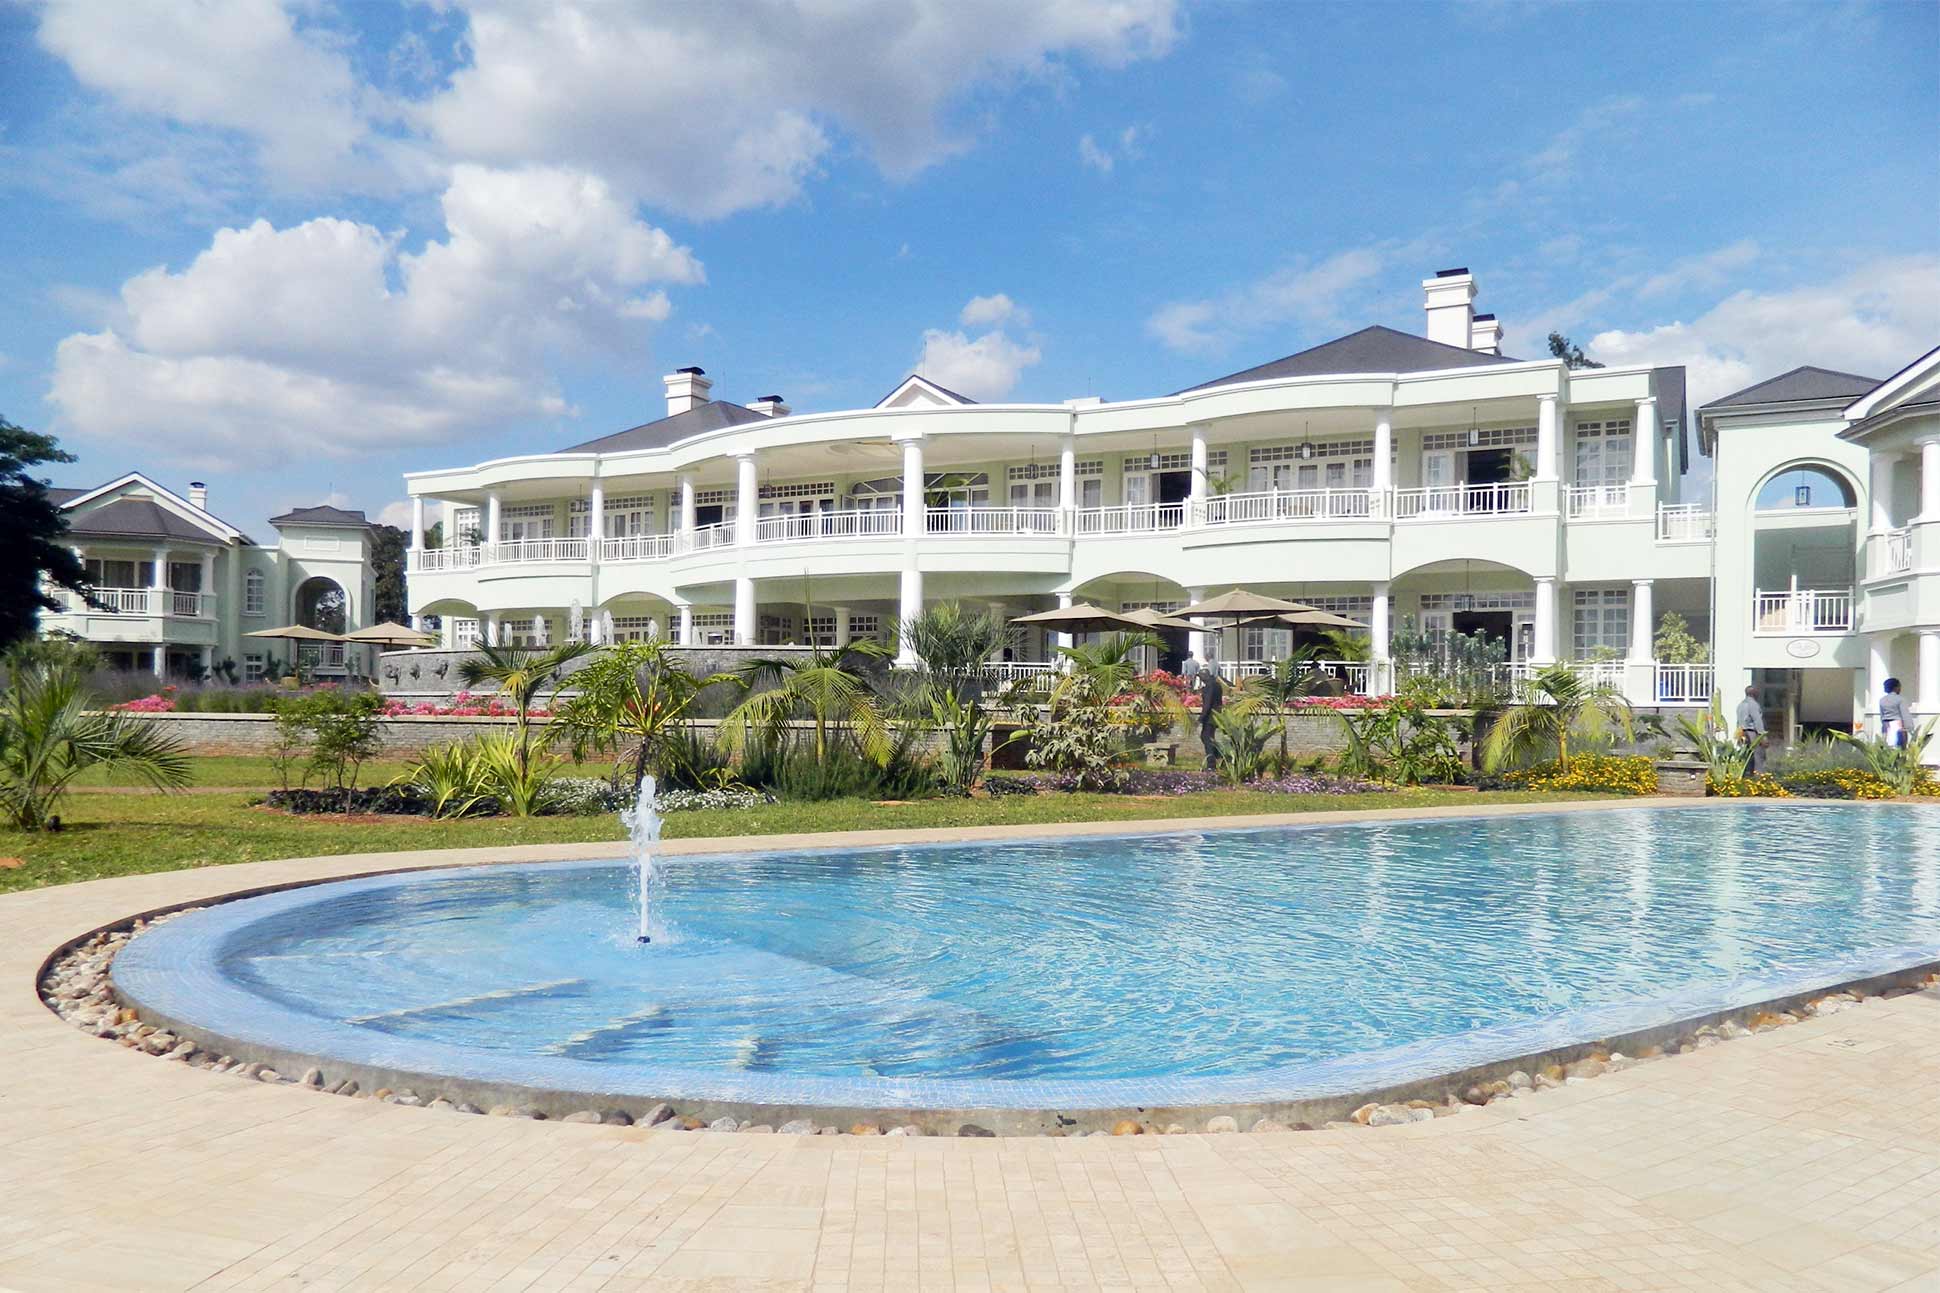 The pool at Hemingways Nairobi, Nairobi, Kenya